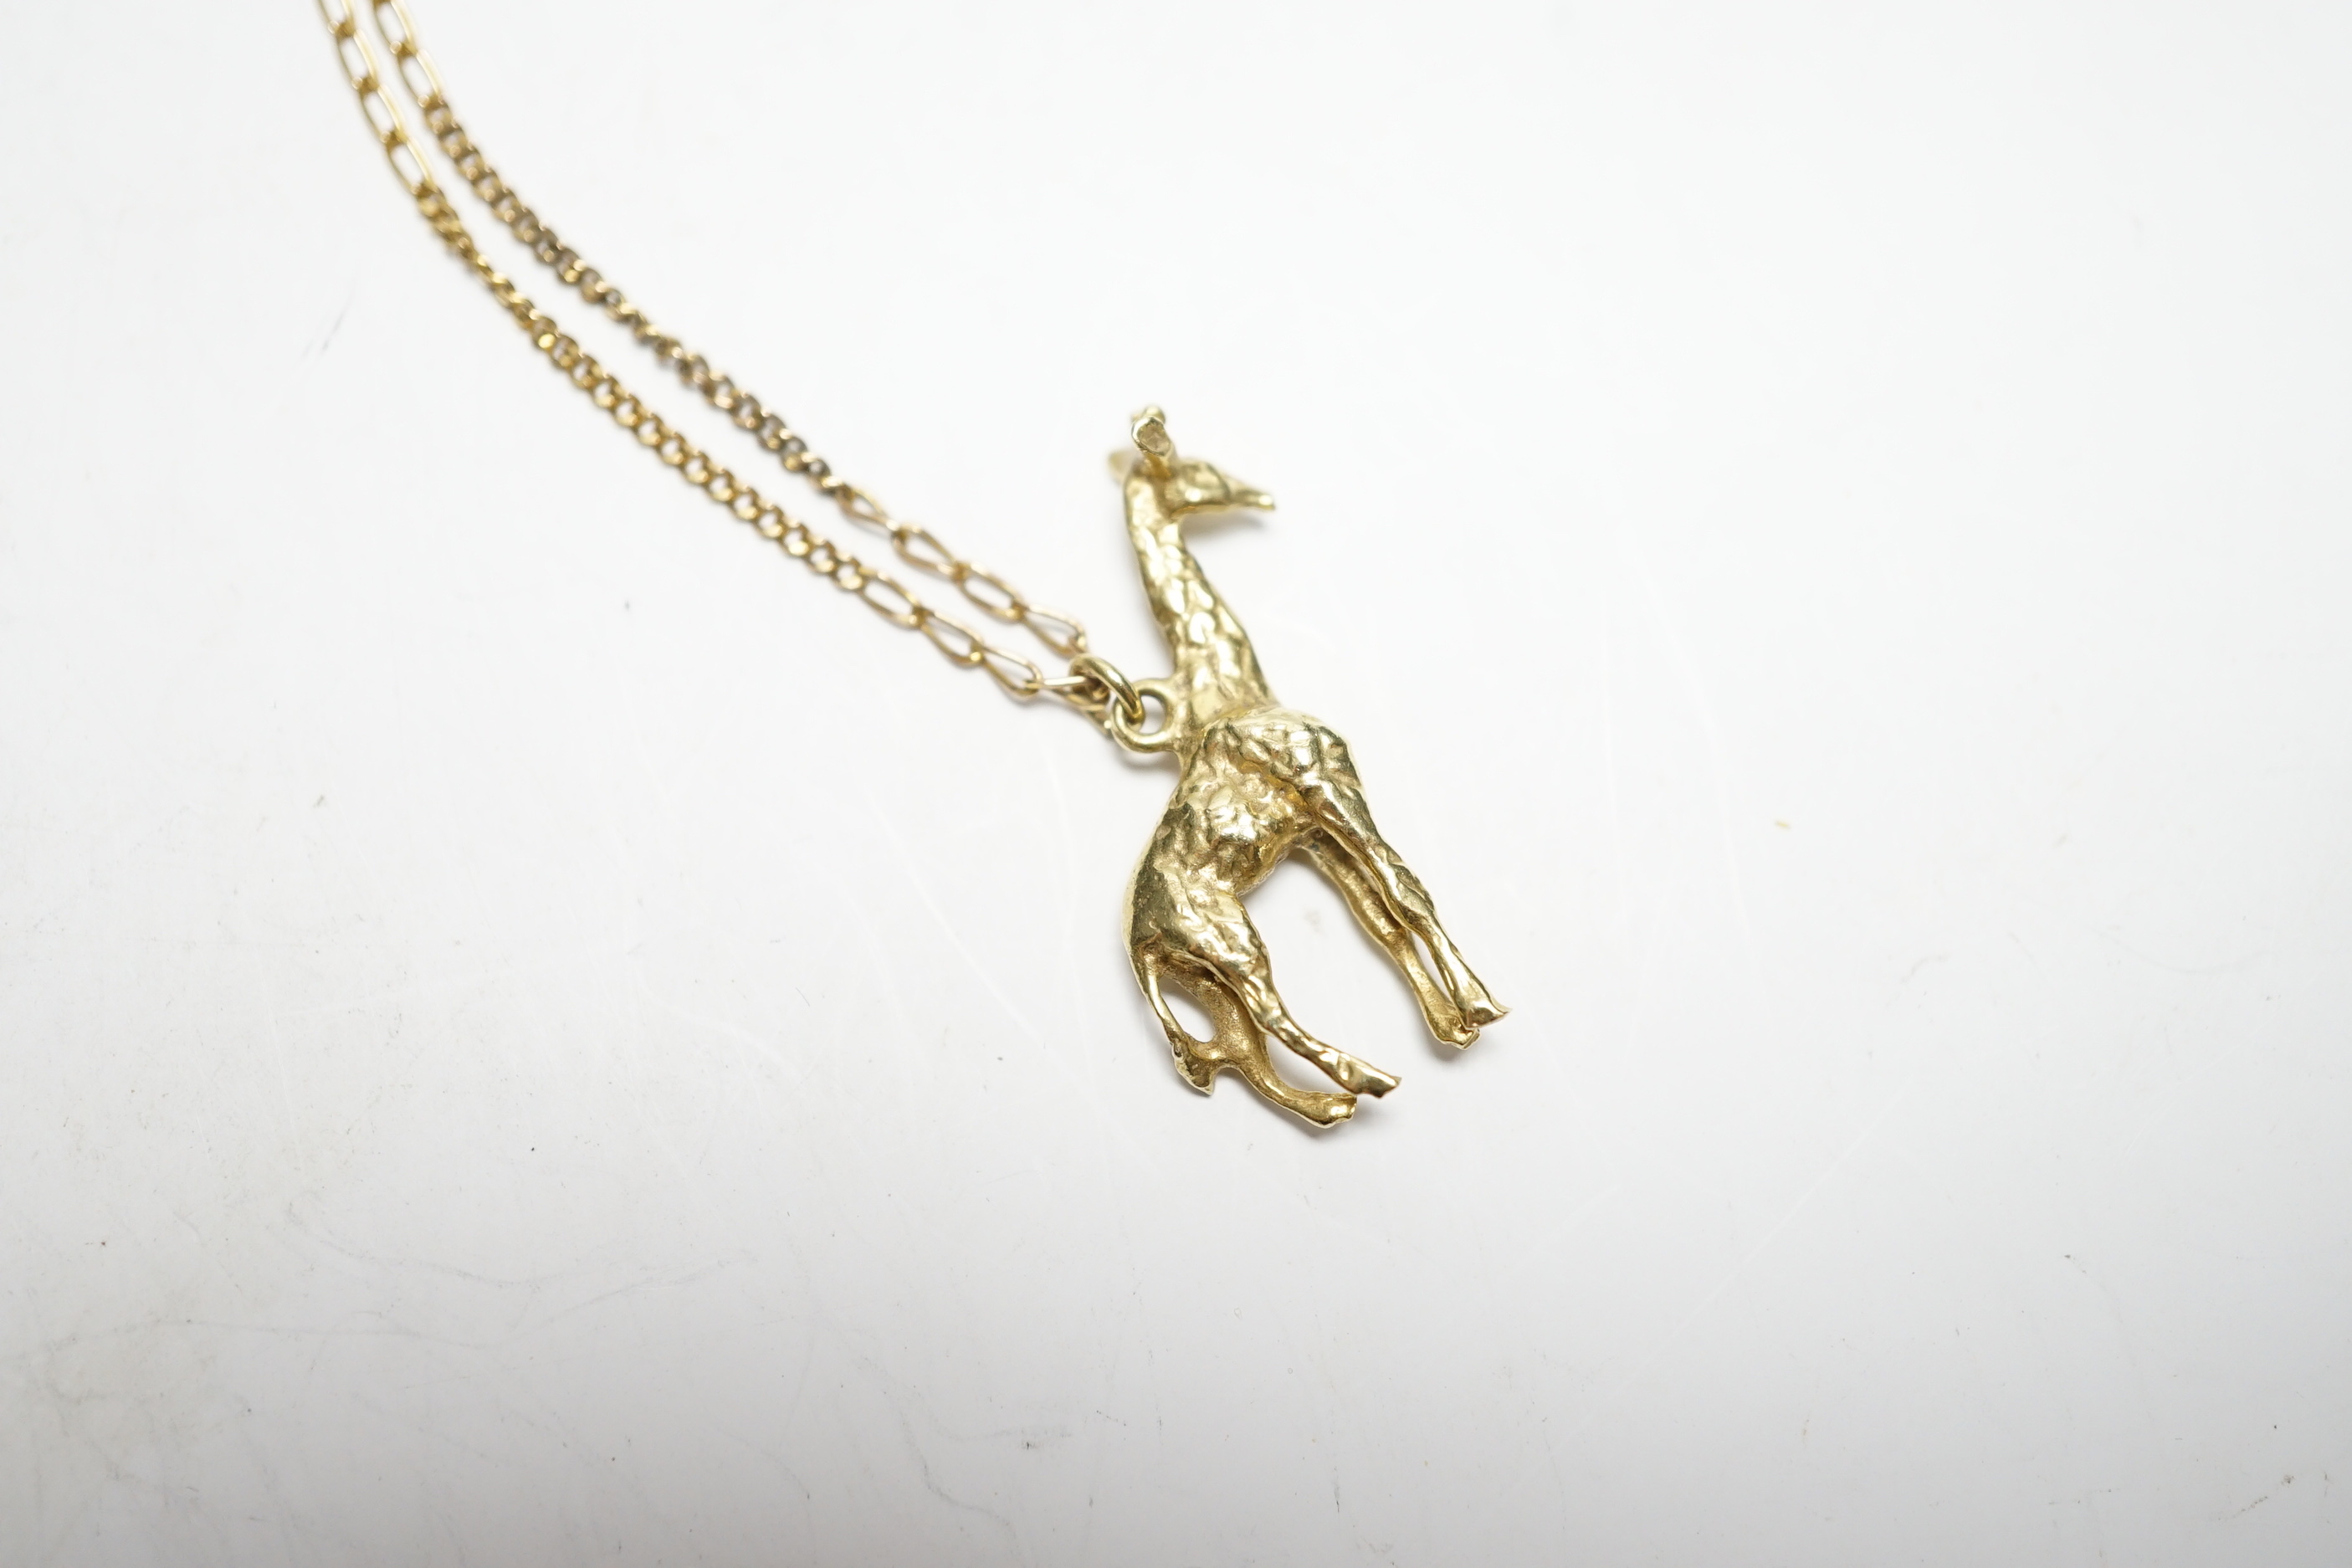 A South African yellow metal giraffe pendant, 30mm, on a 9k chain, gross weight 7.4 grams.